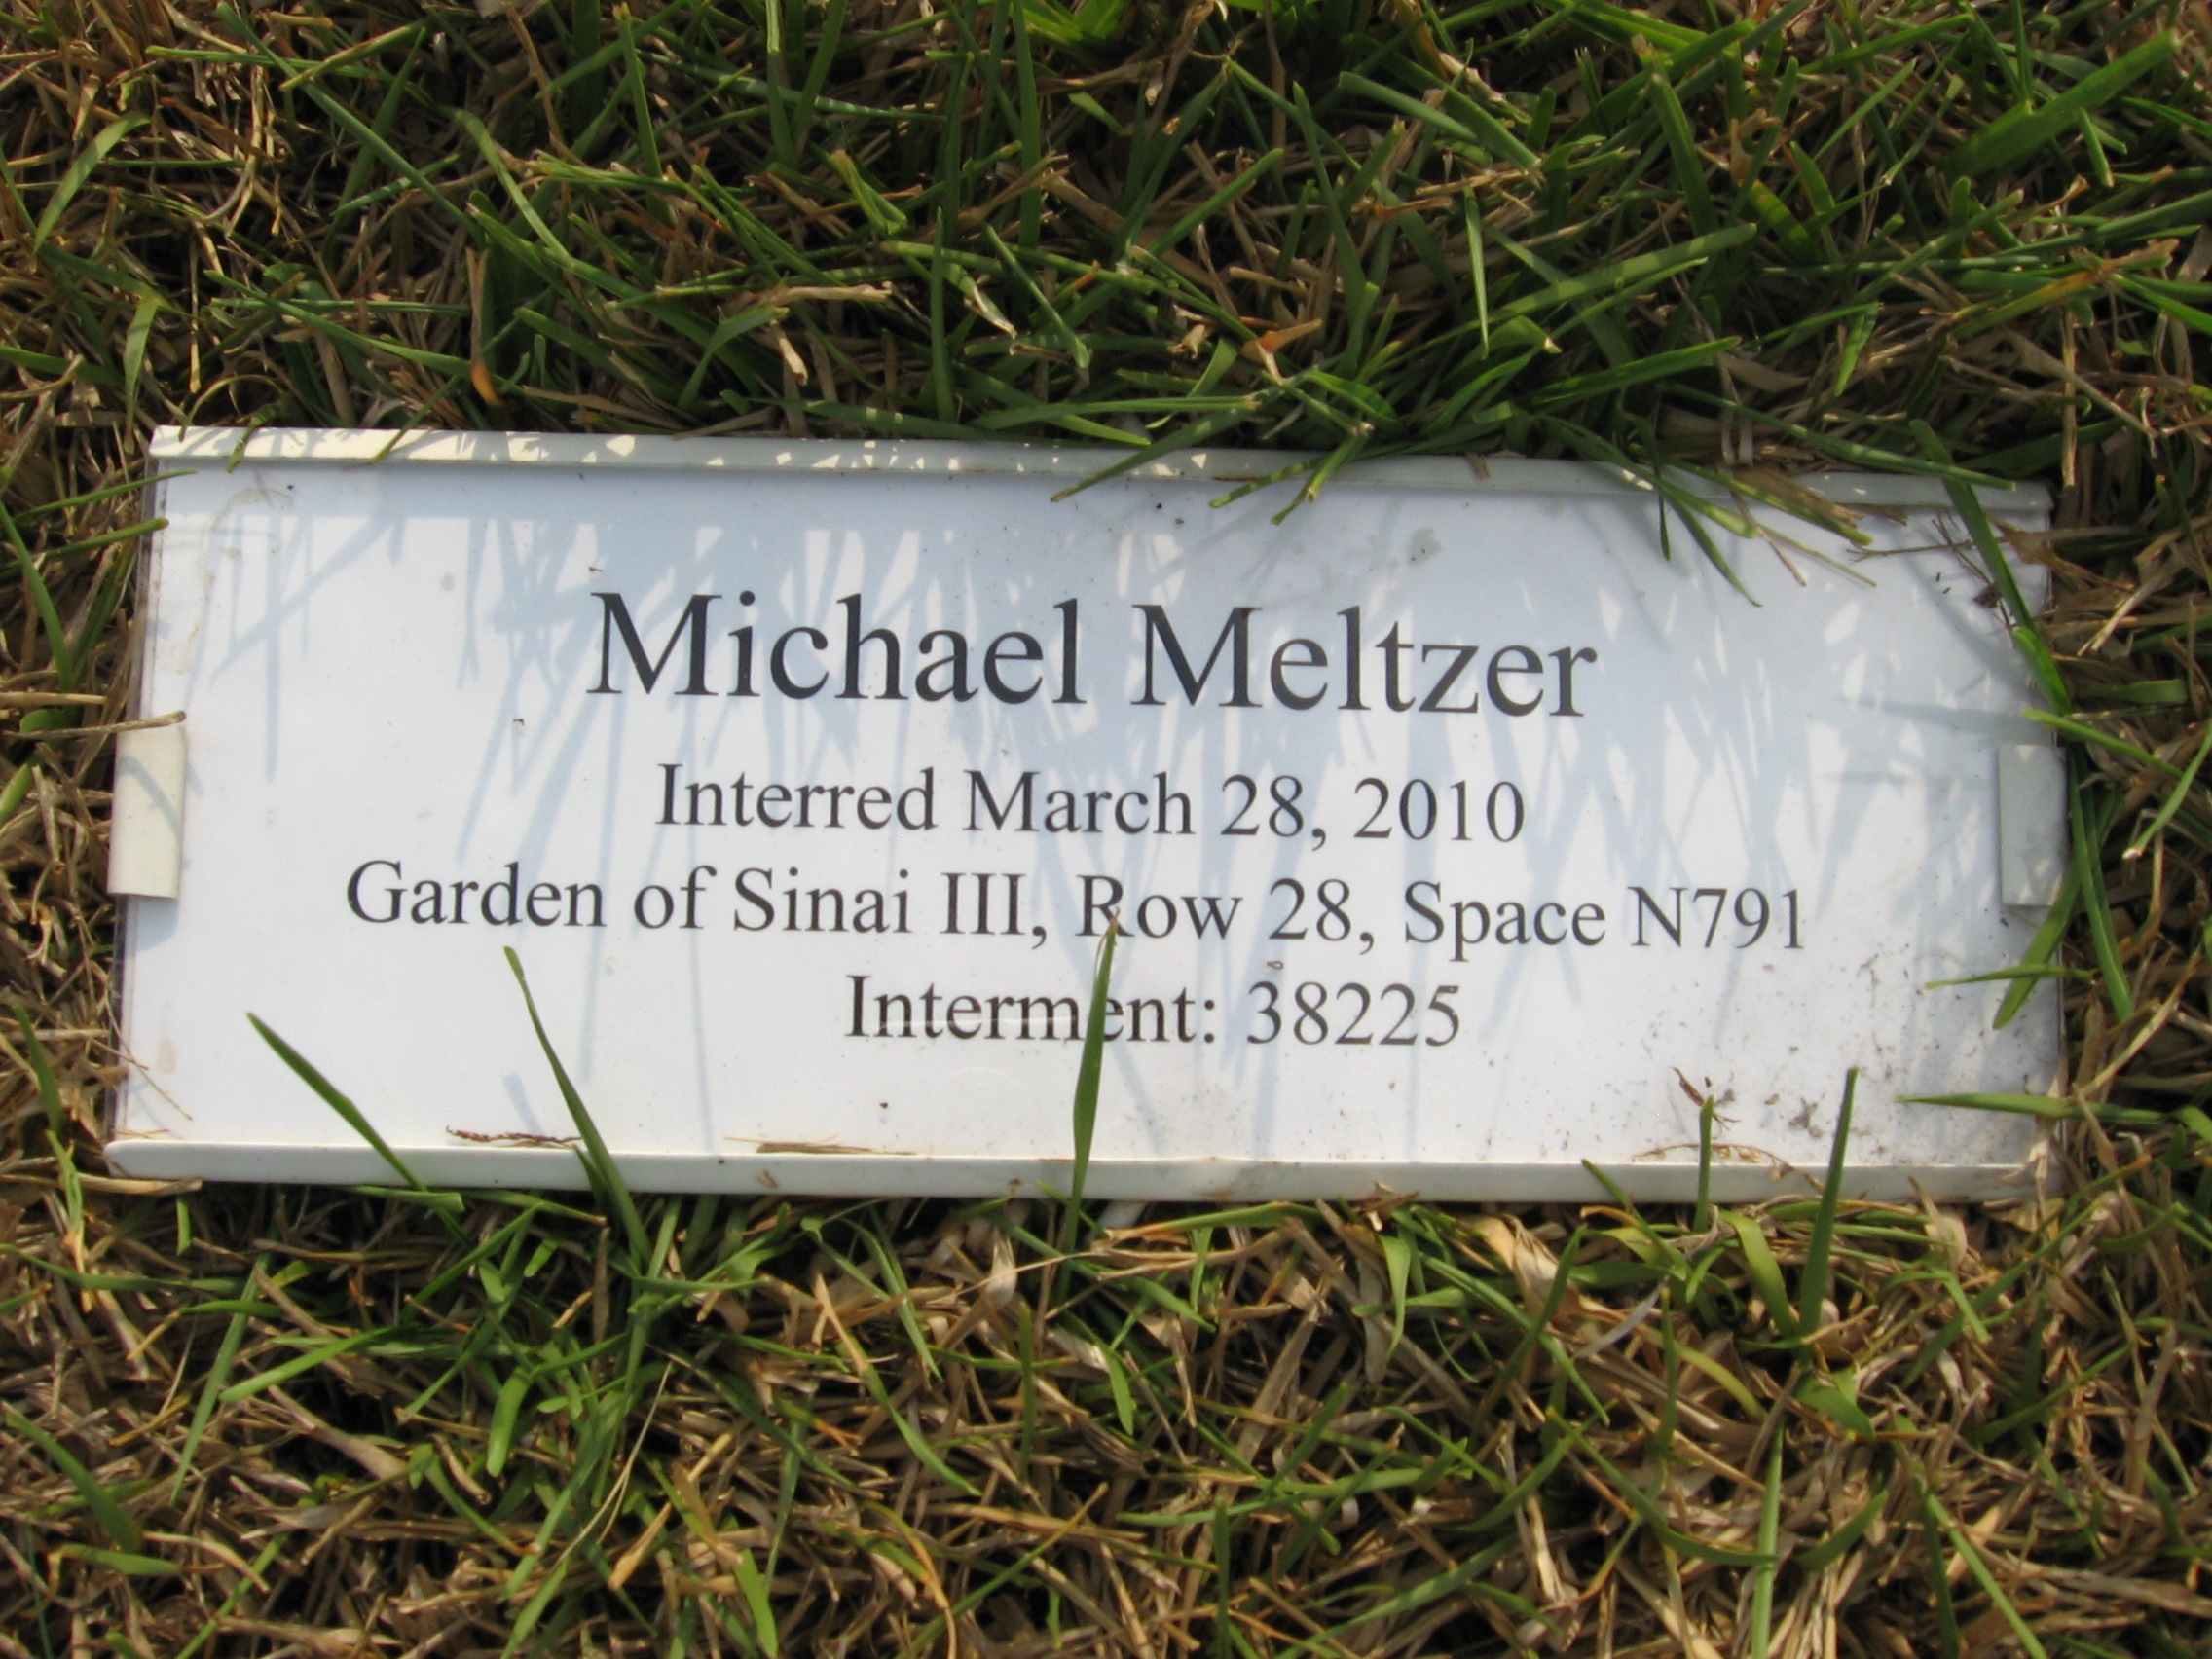 Michael Meltzer